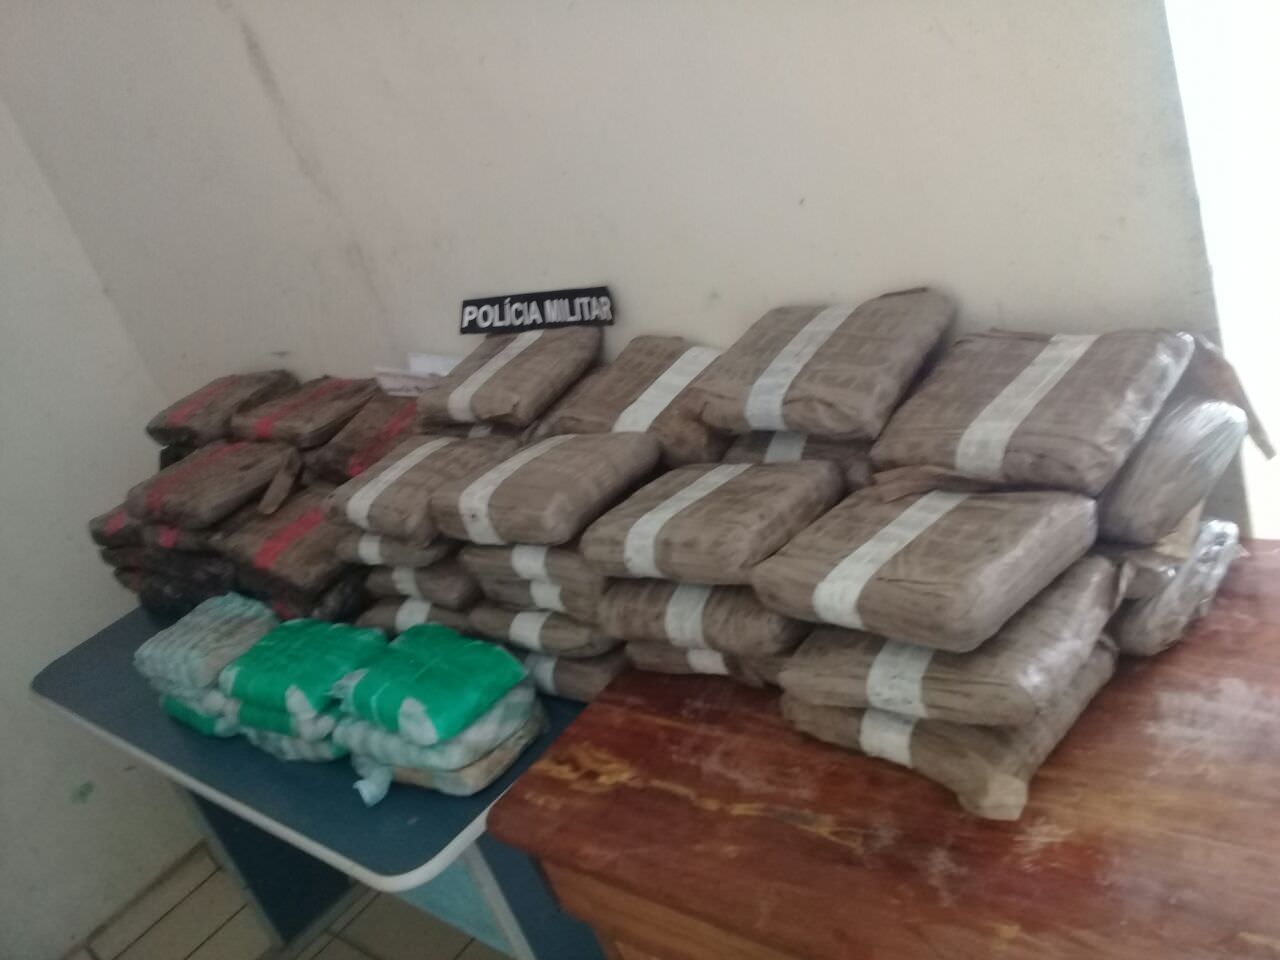 74 quilos de drogas são apreendidos em embarcação, no Amazonas